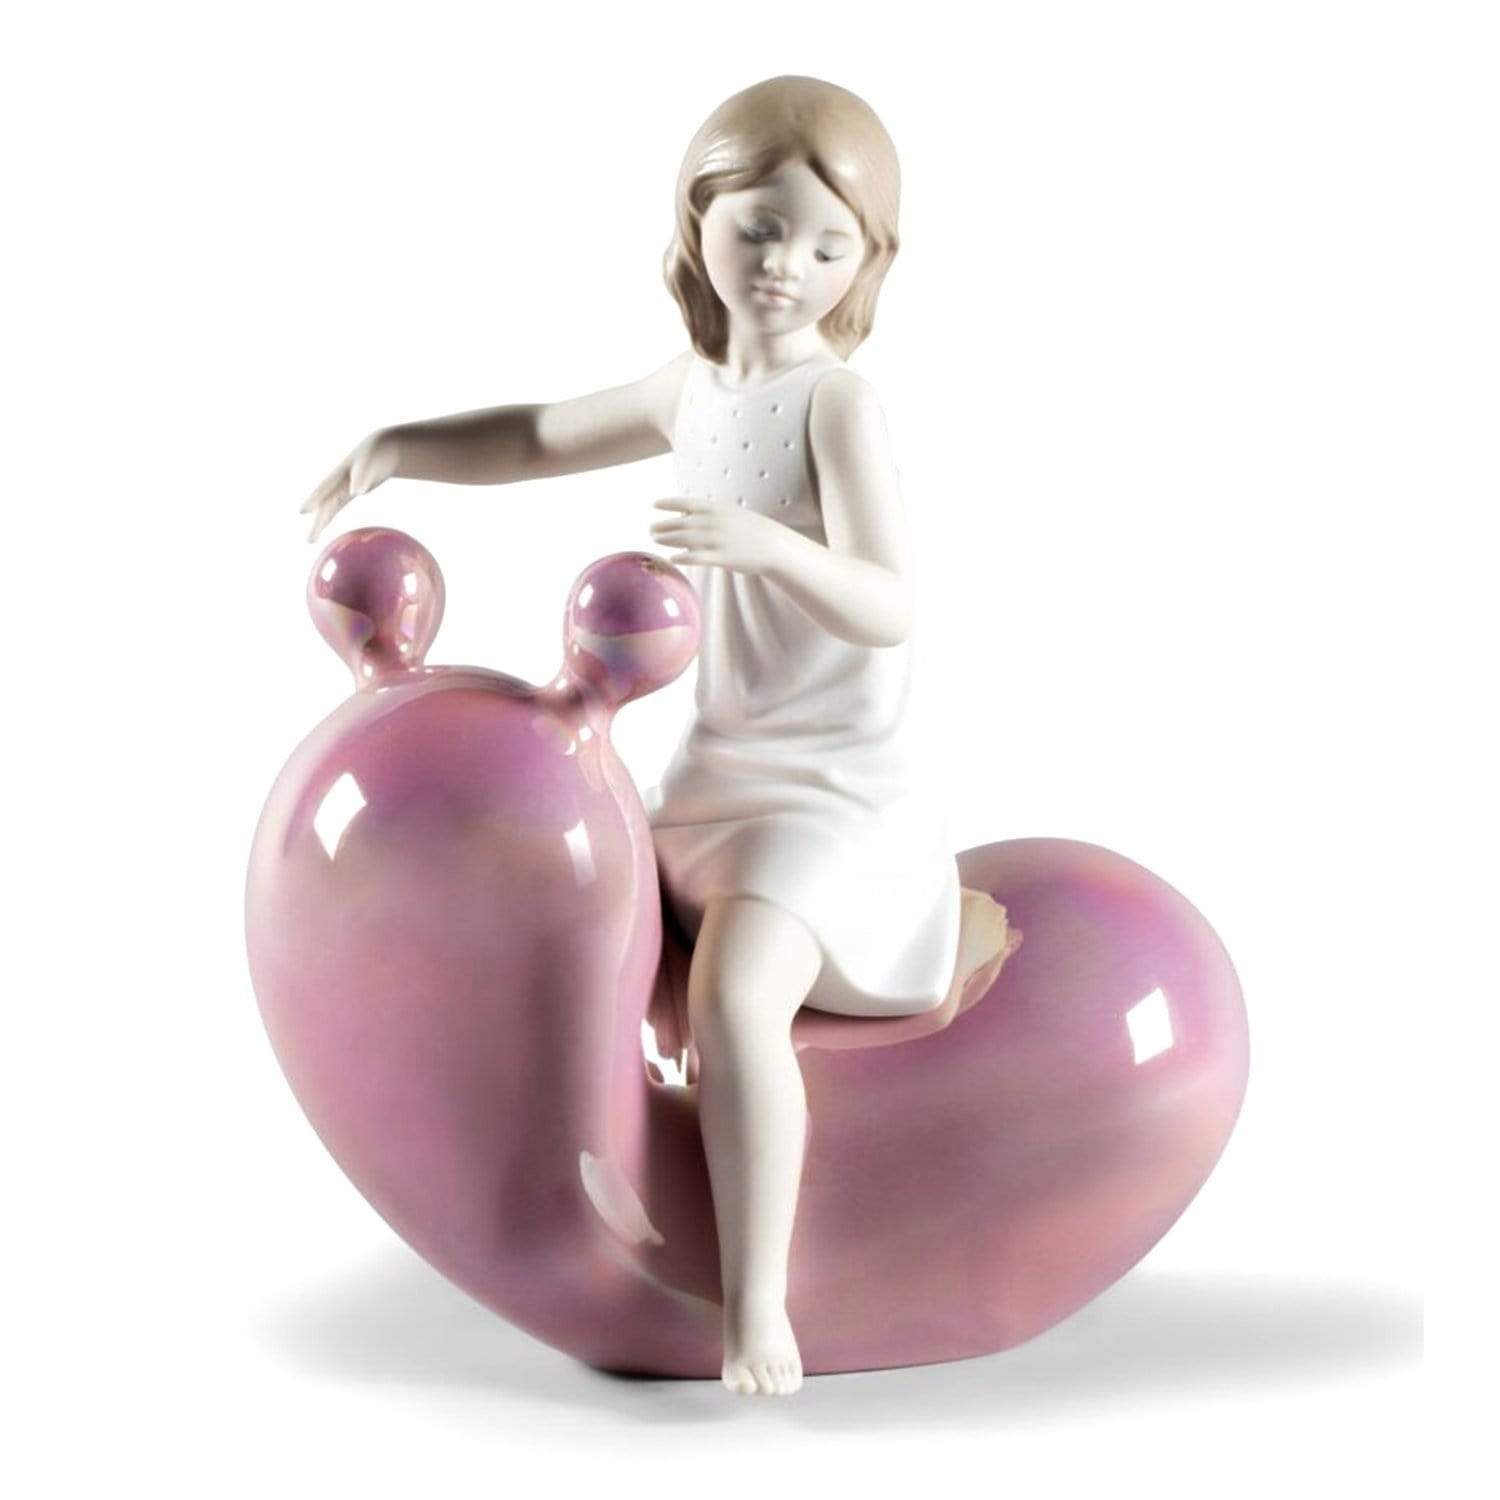 Lladro بلدي سيساو بالون فتاة التمثال - الوردي والأبيض - 1009367 - Jashanmal الرئيسية